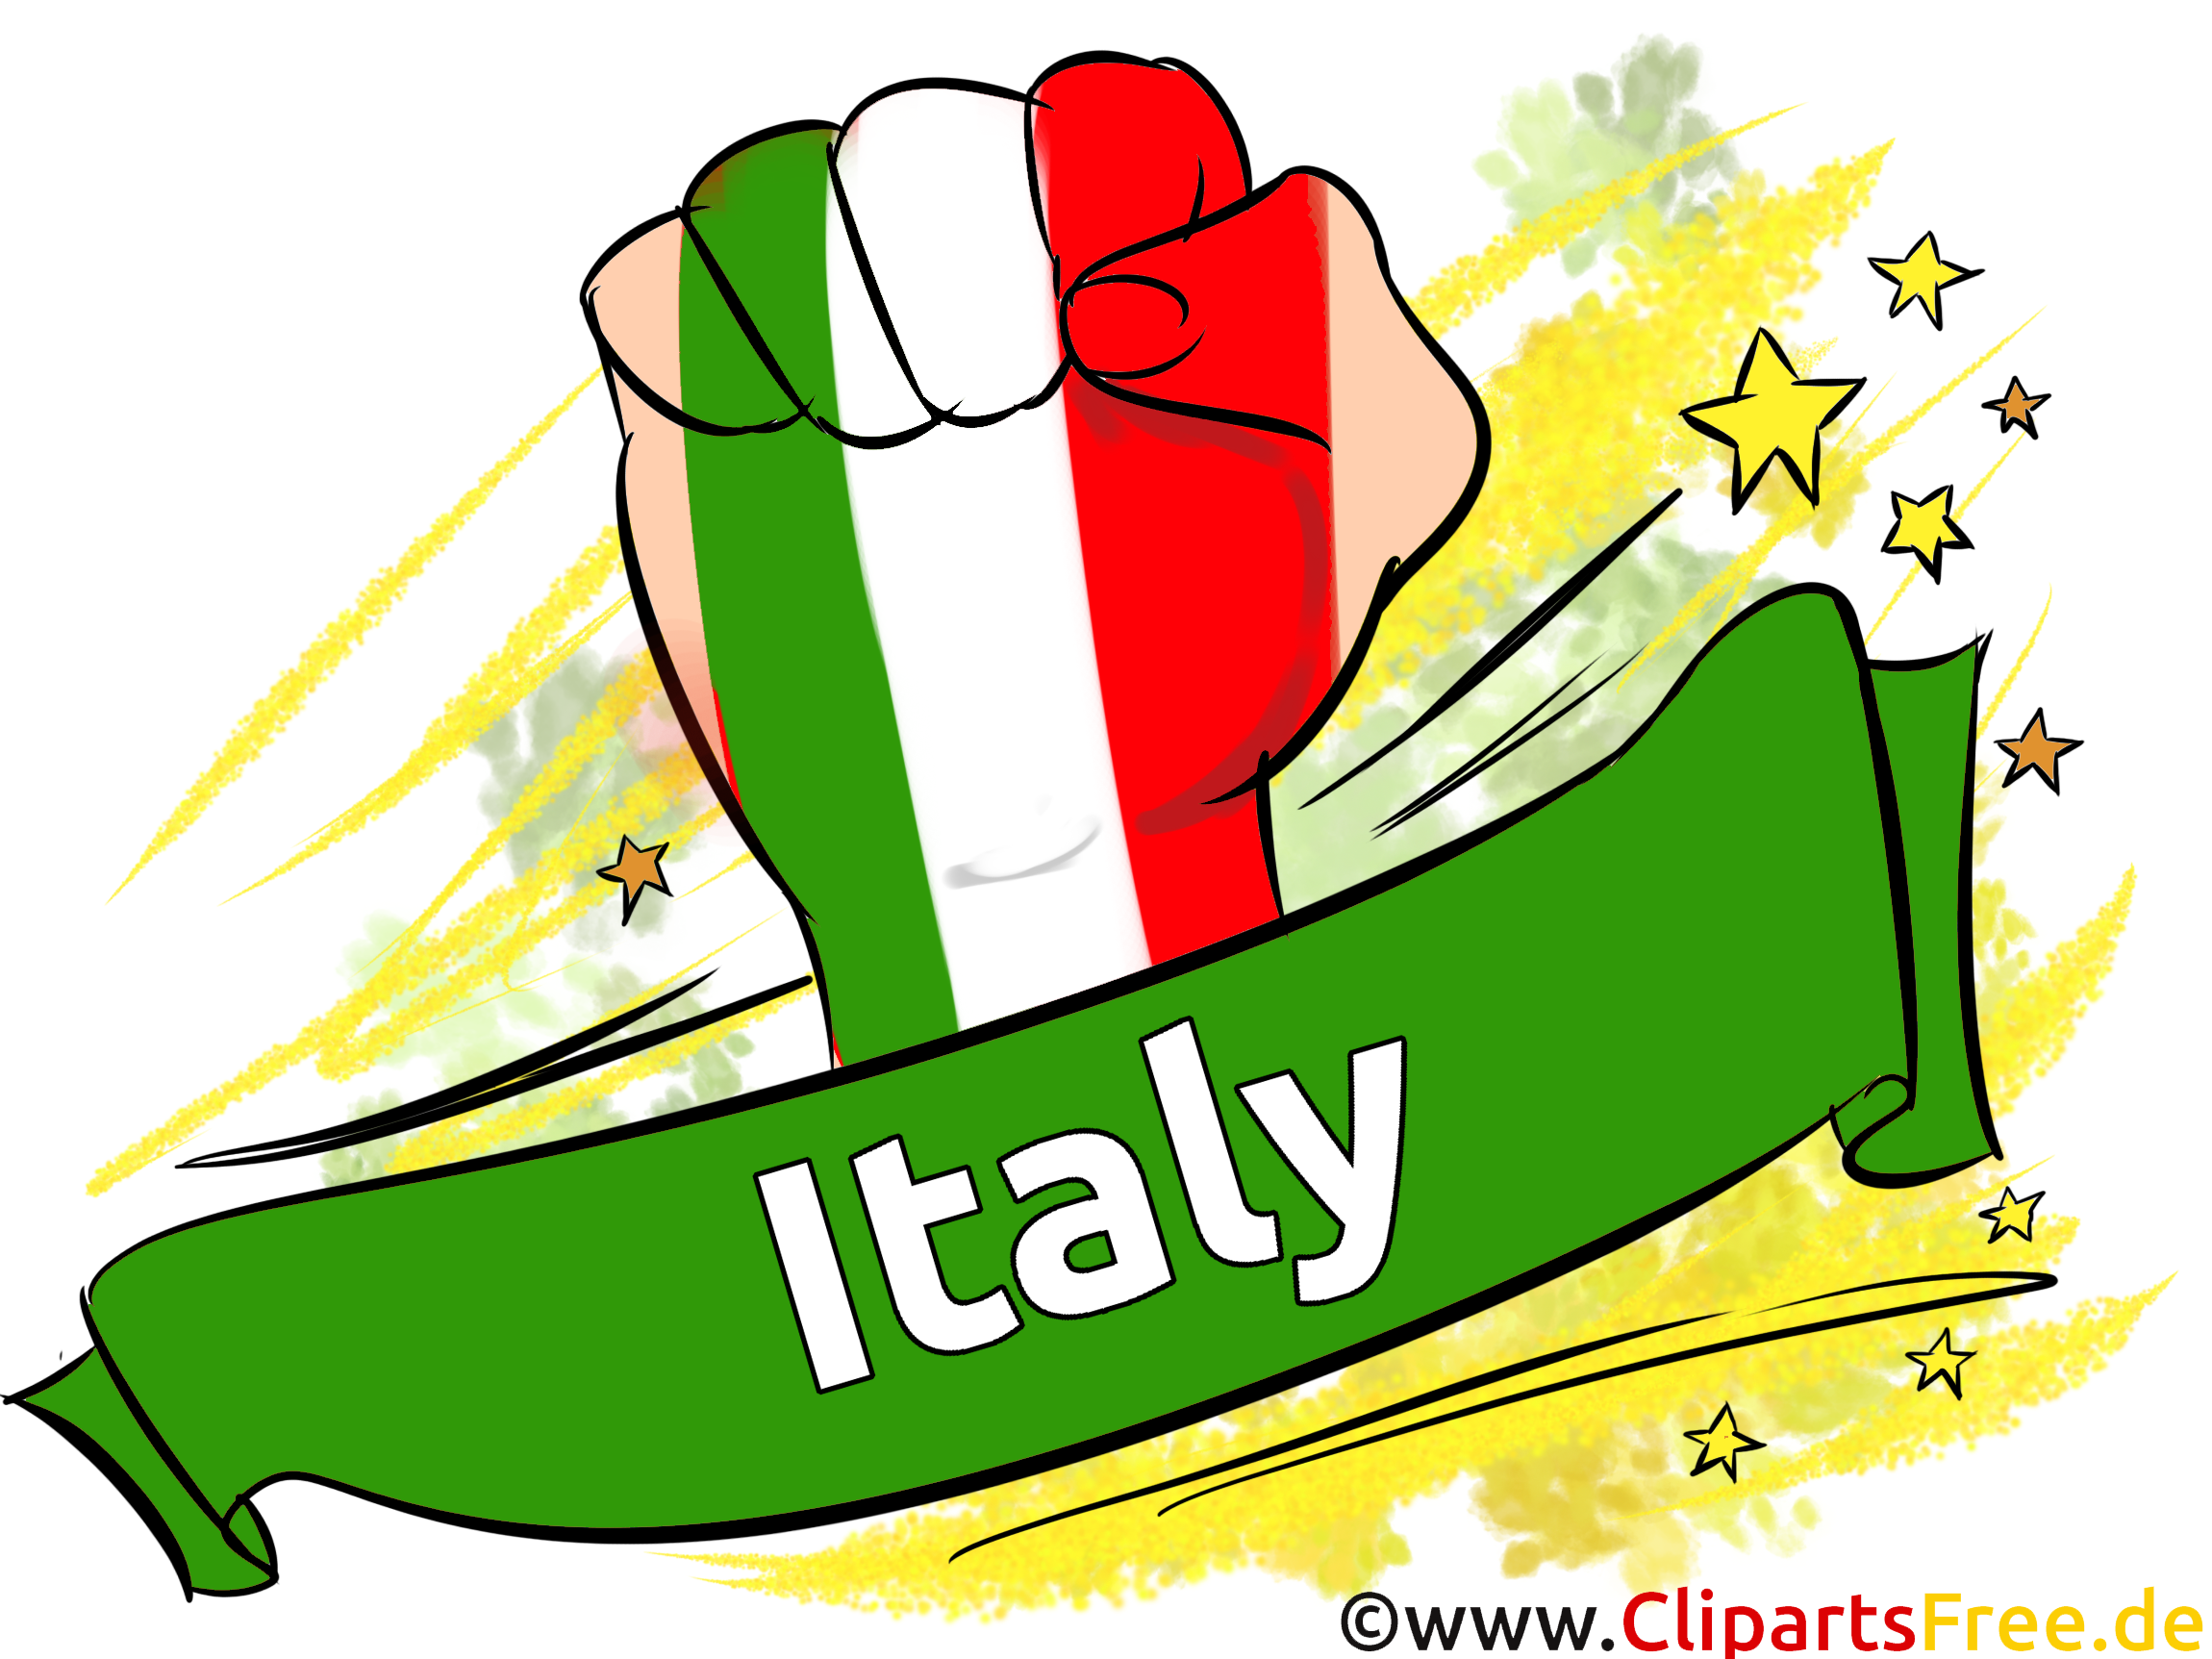 Italie Images Football gratuit pour télécharger